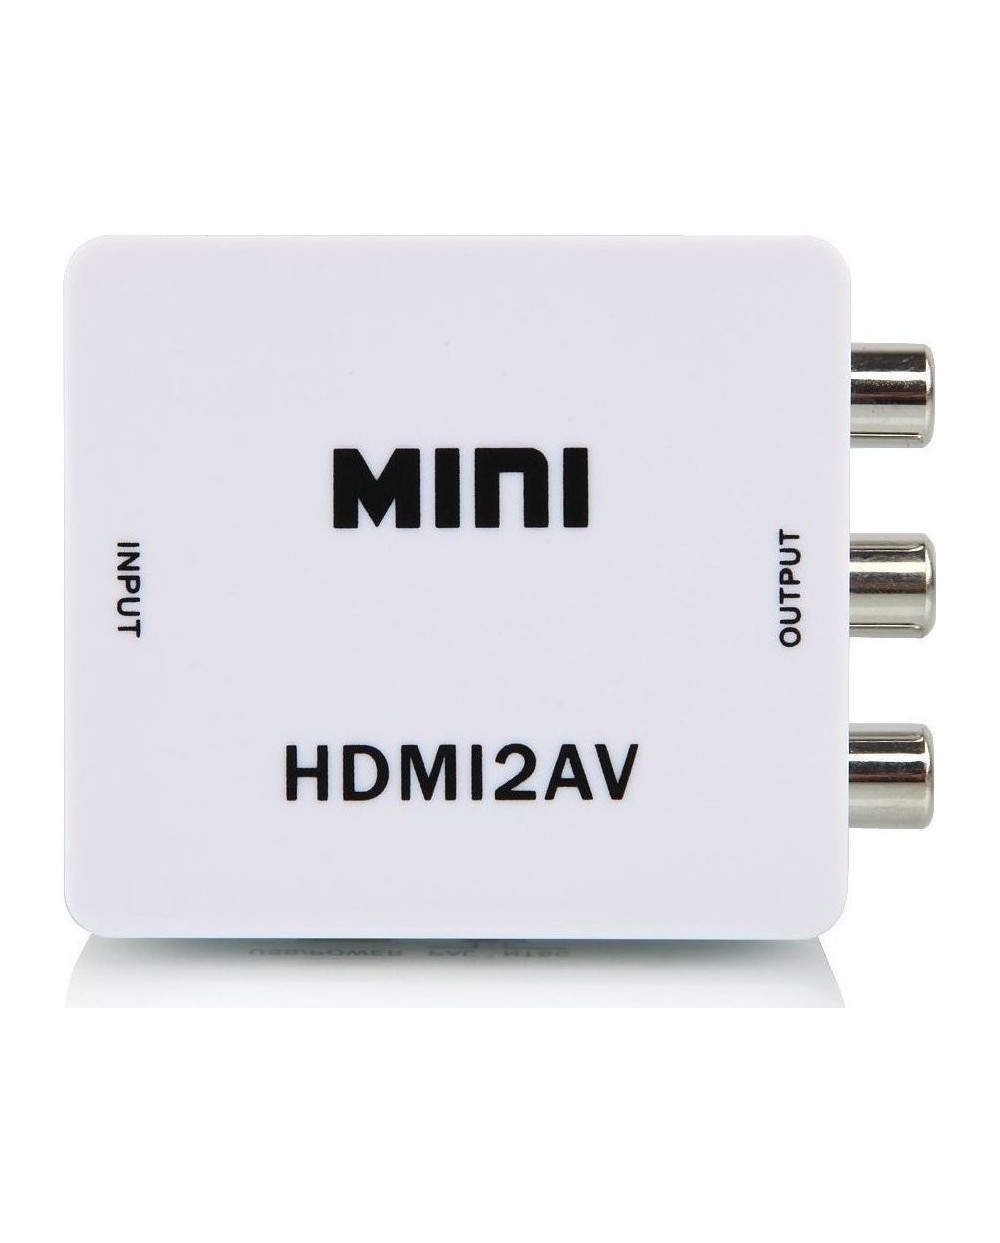 ΜΕΤΑΤΡΟΠΕΑΣ PowerPlus  HDMI2AV από HDMI (A) θηλυκό σε 3 RCA θηλυκά